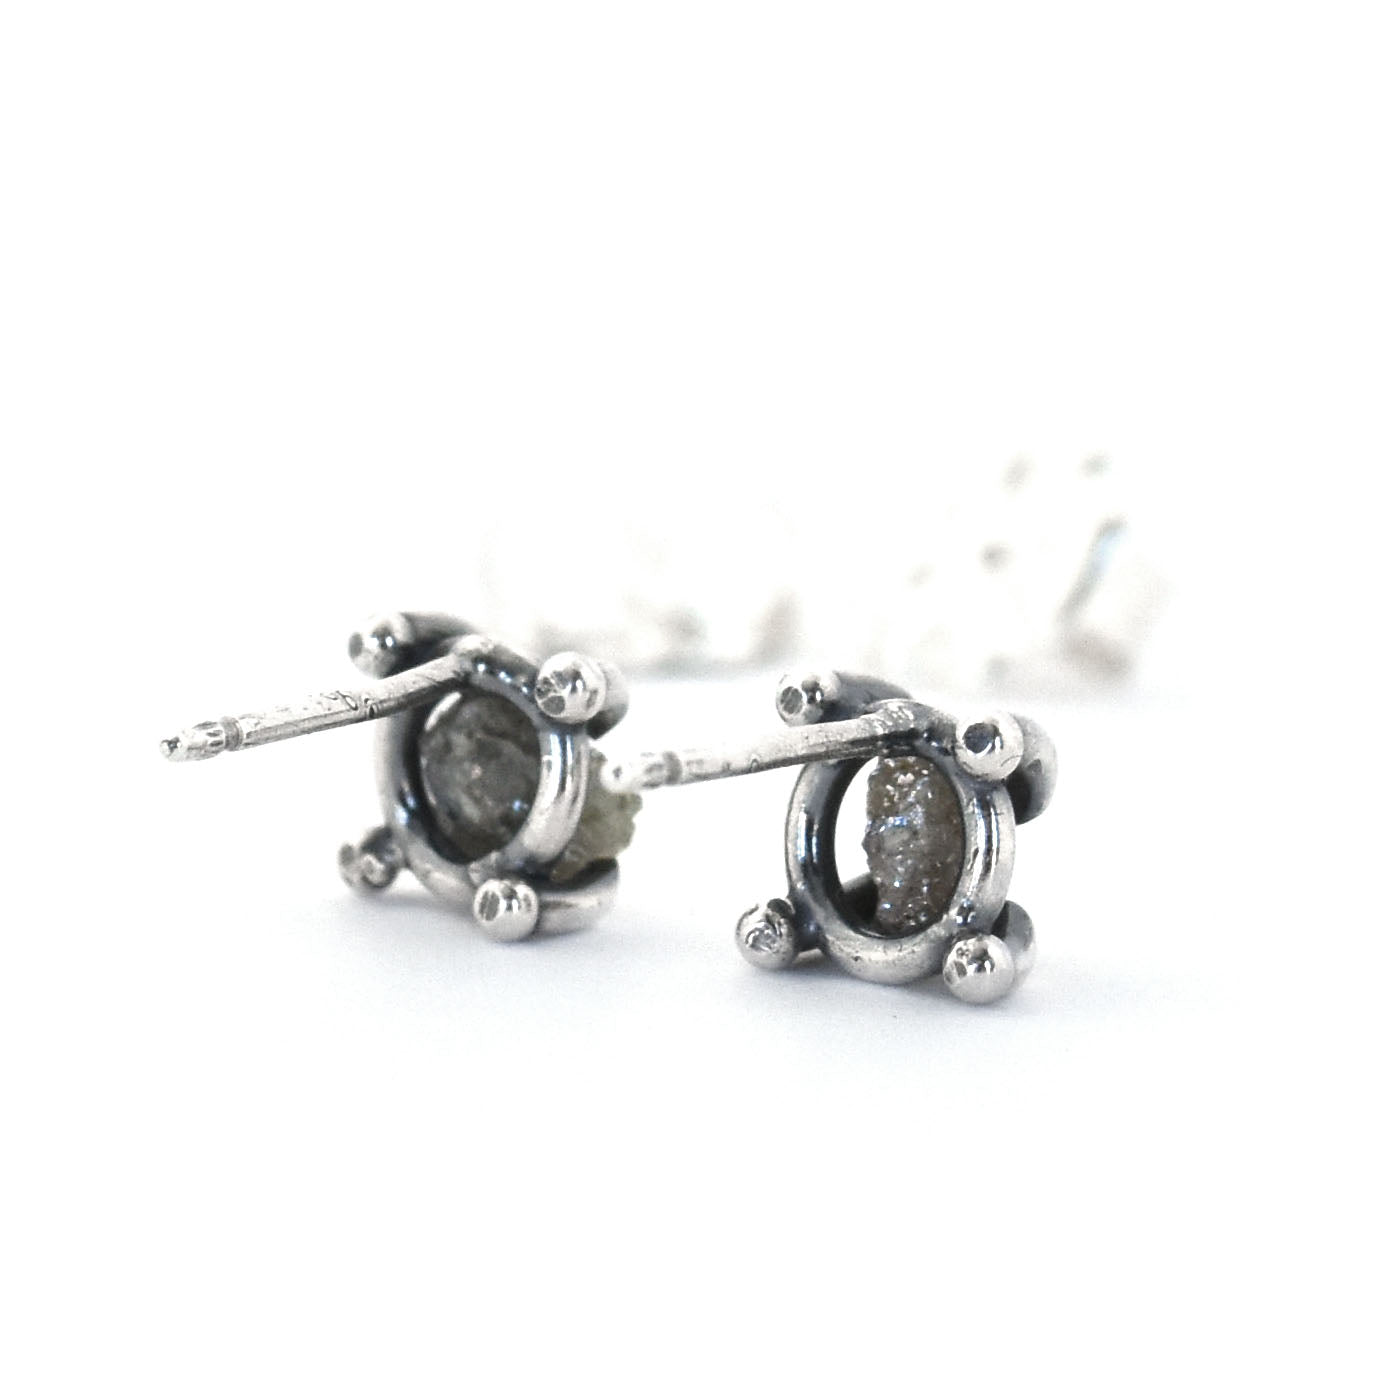 Raw Diamond Post Earrings No. 3 - Silver Earrings   5787 - handmade by Beth Millner Jewelry